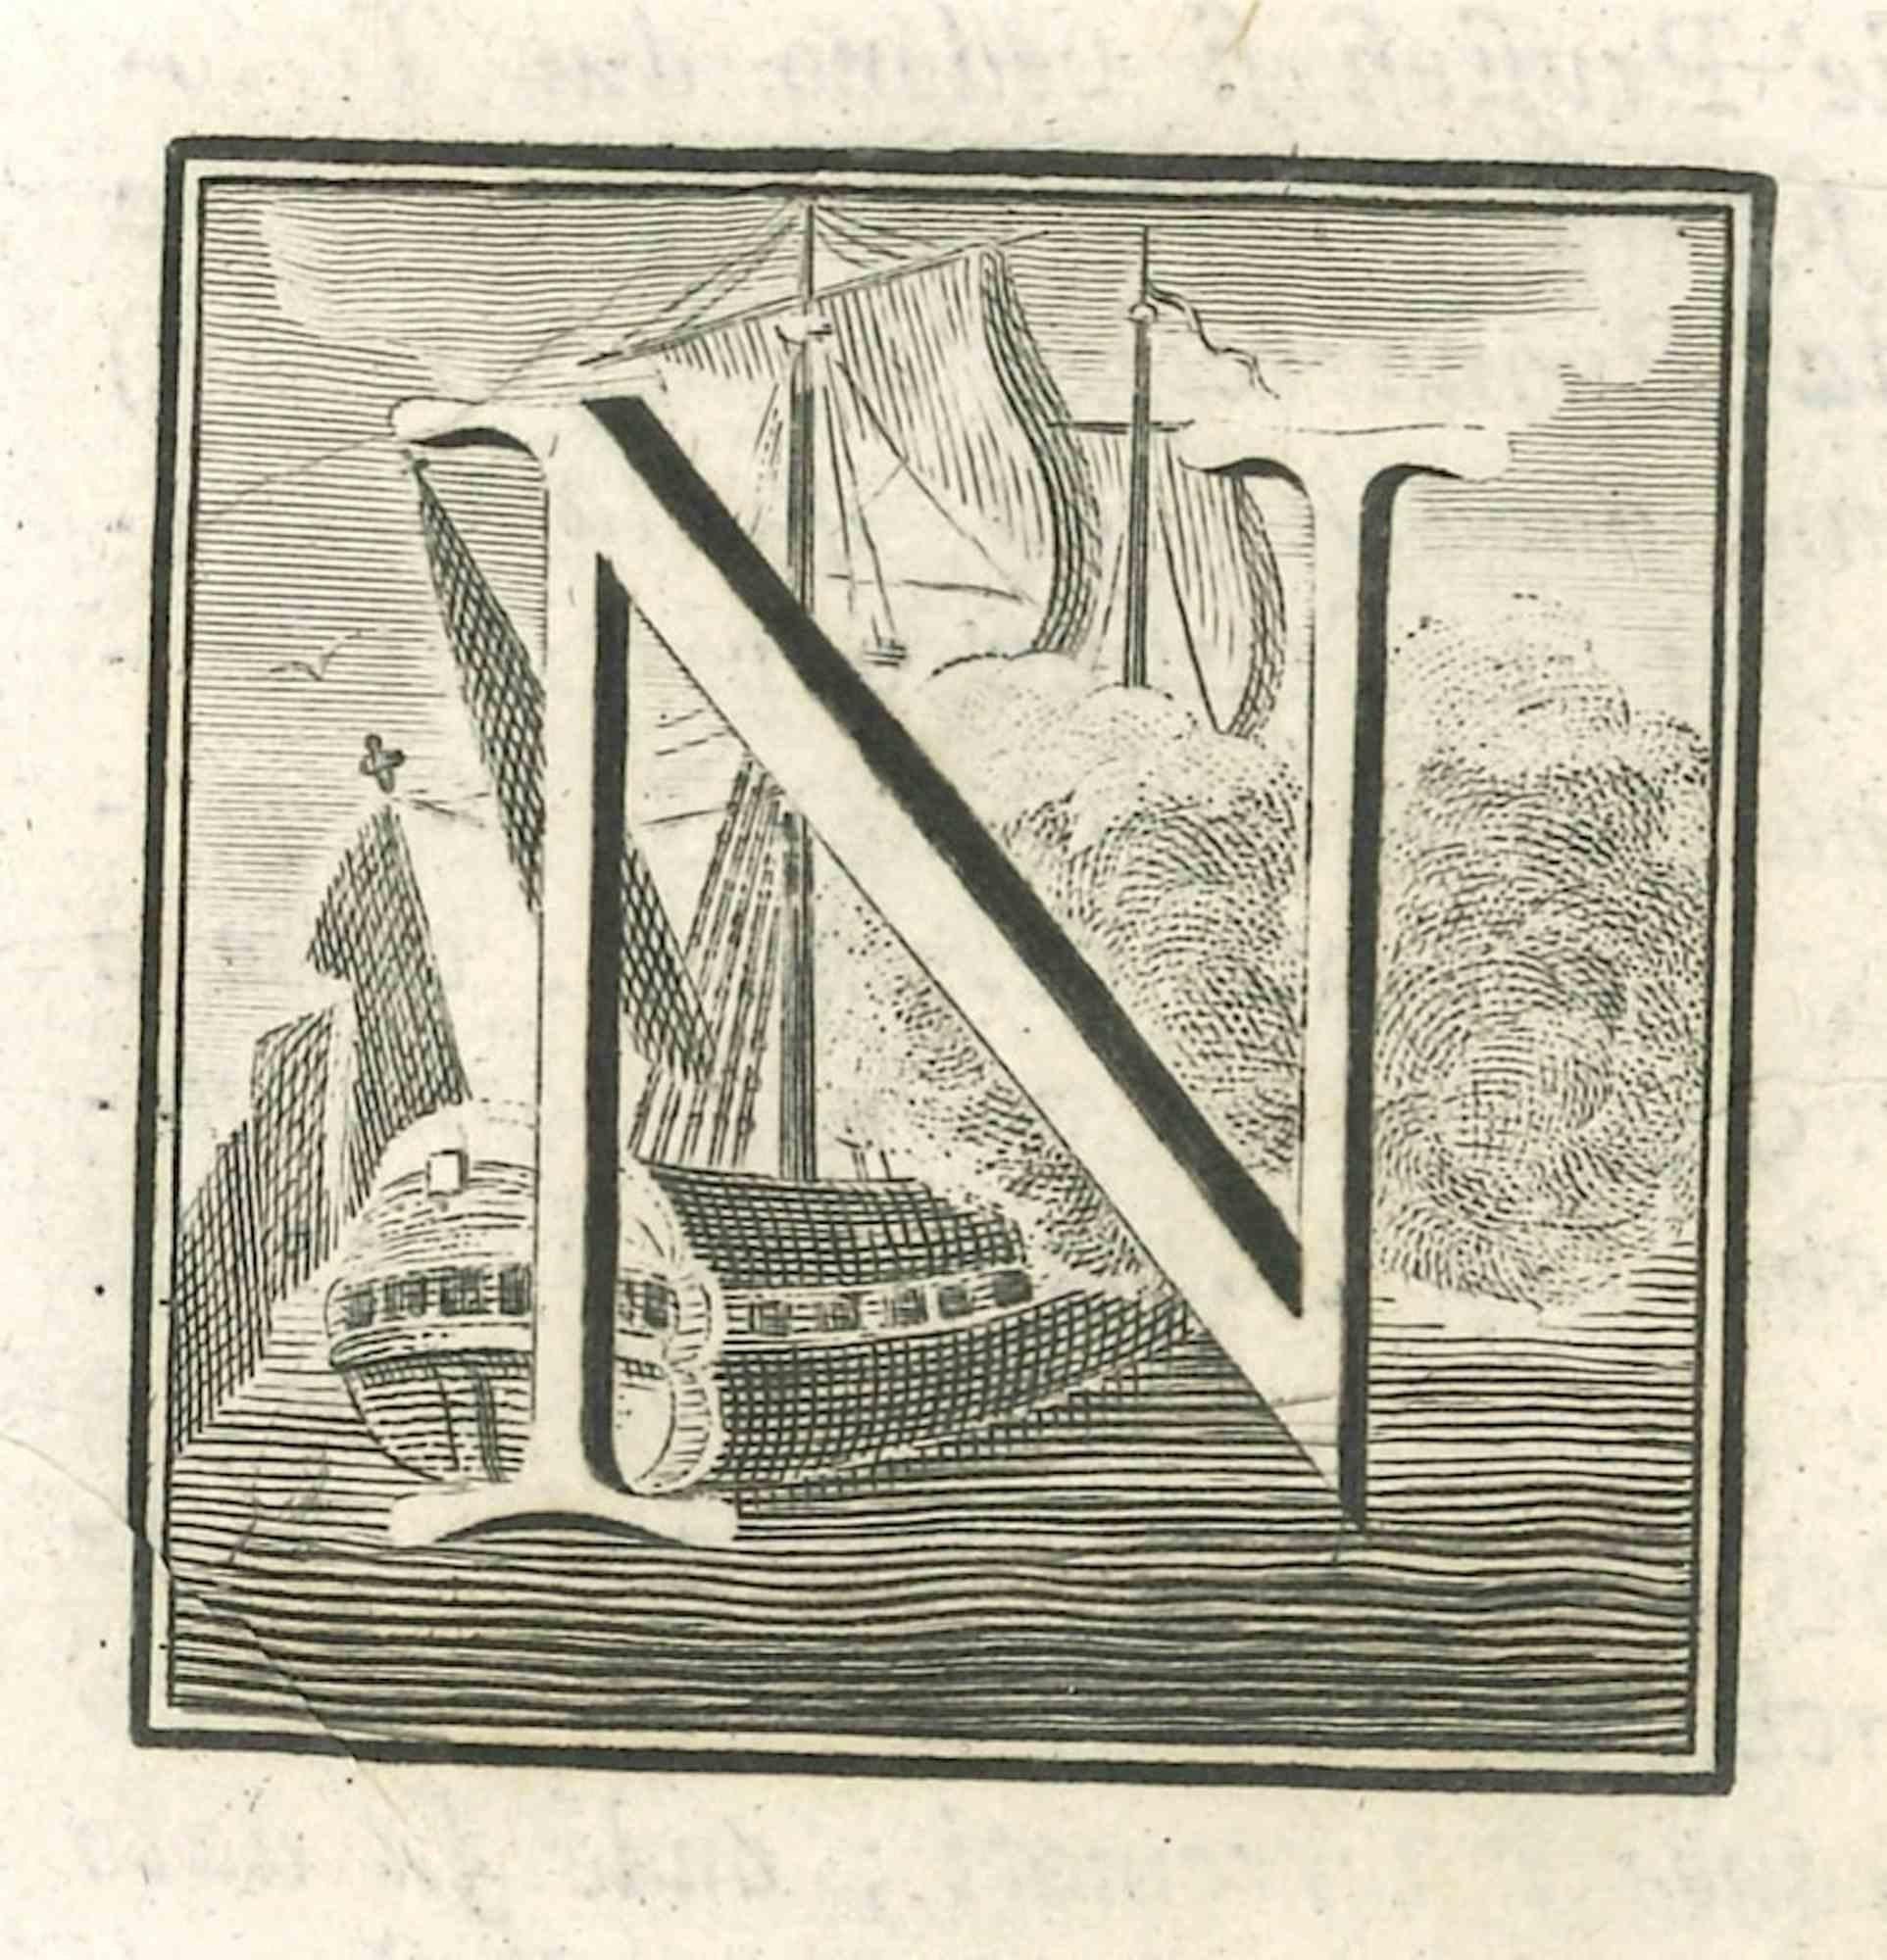 Lettre de l'alphabet N,  de la série "Antiquités d'Herculanum", est une gravure sur papier réalisée par divers auteurs au 18ème siècle.

Bonnes conditions.

La gravure appartient à la suite d'estampes "Antiquités d'Herculanum exposées" (titre